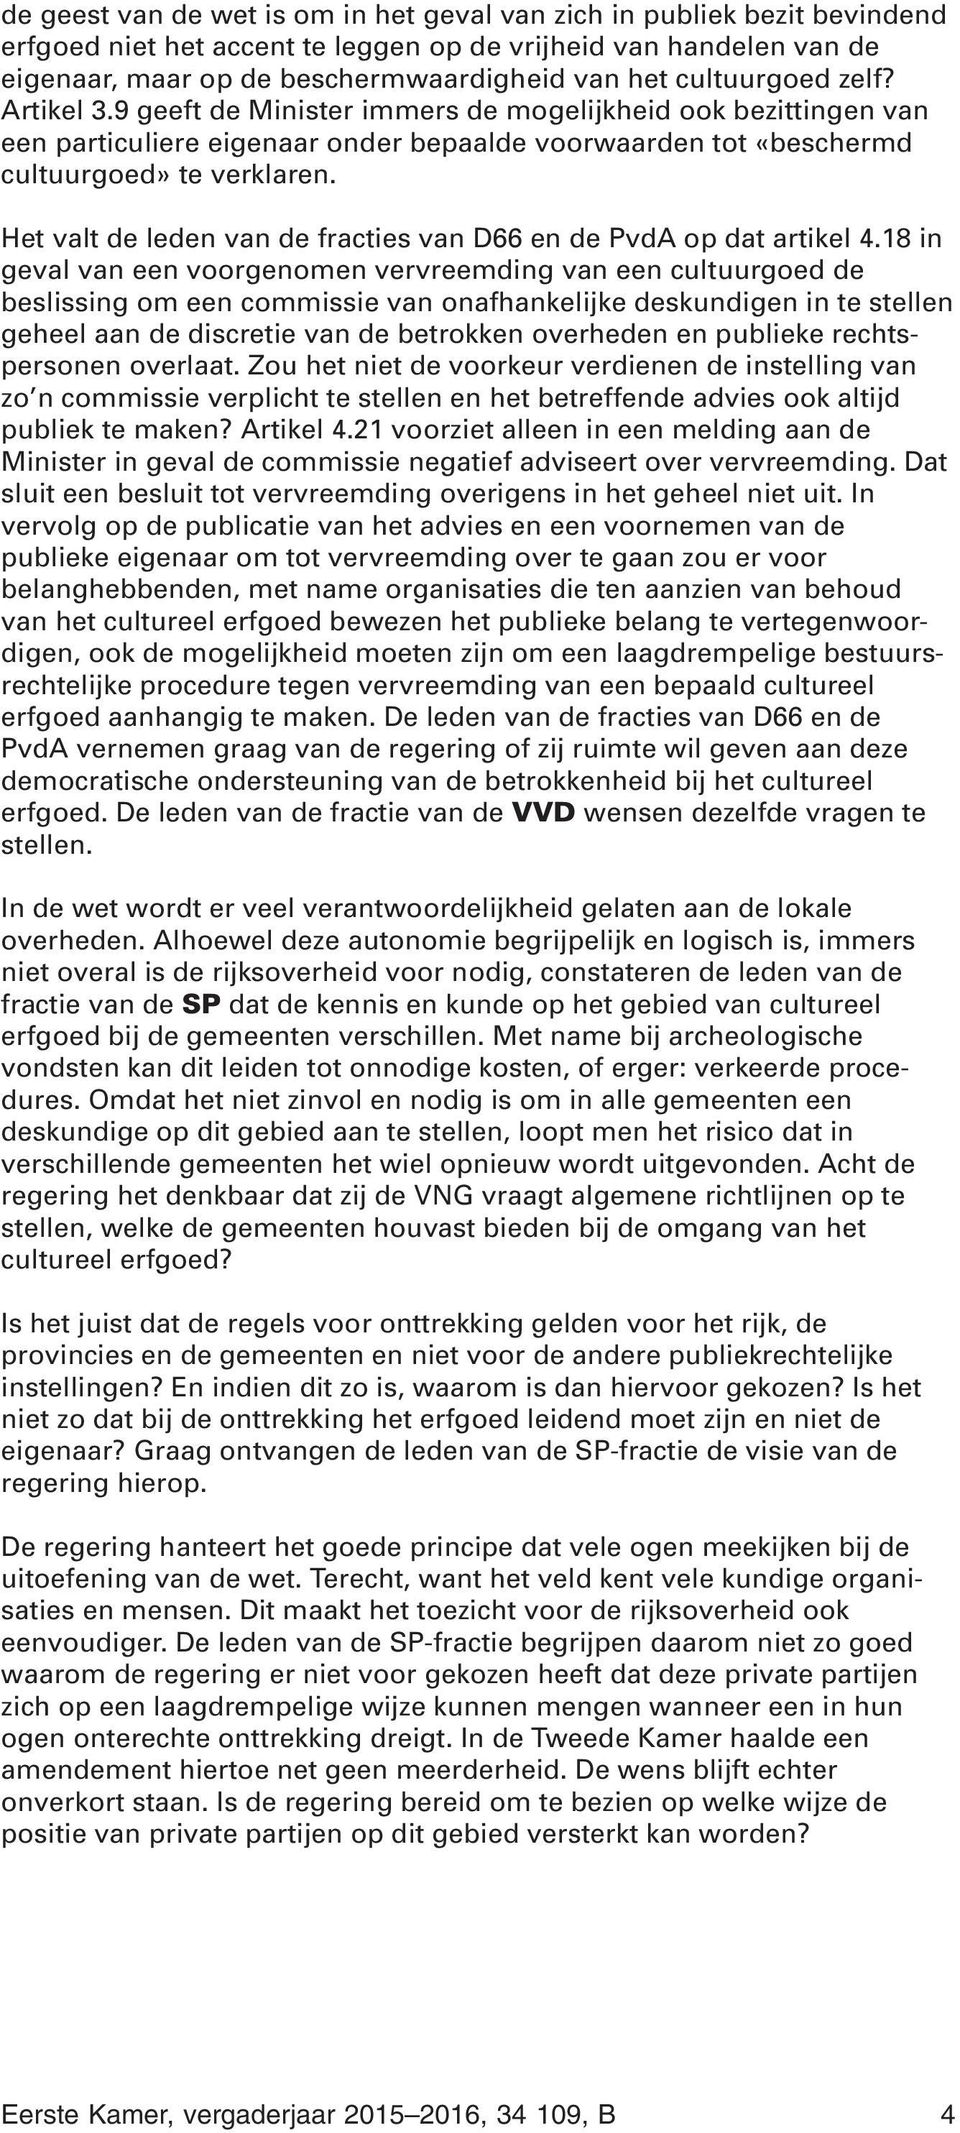 Het valt de leden van de fracties van D66 en de PvdA op dat artikel 4.